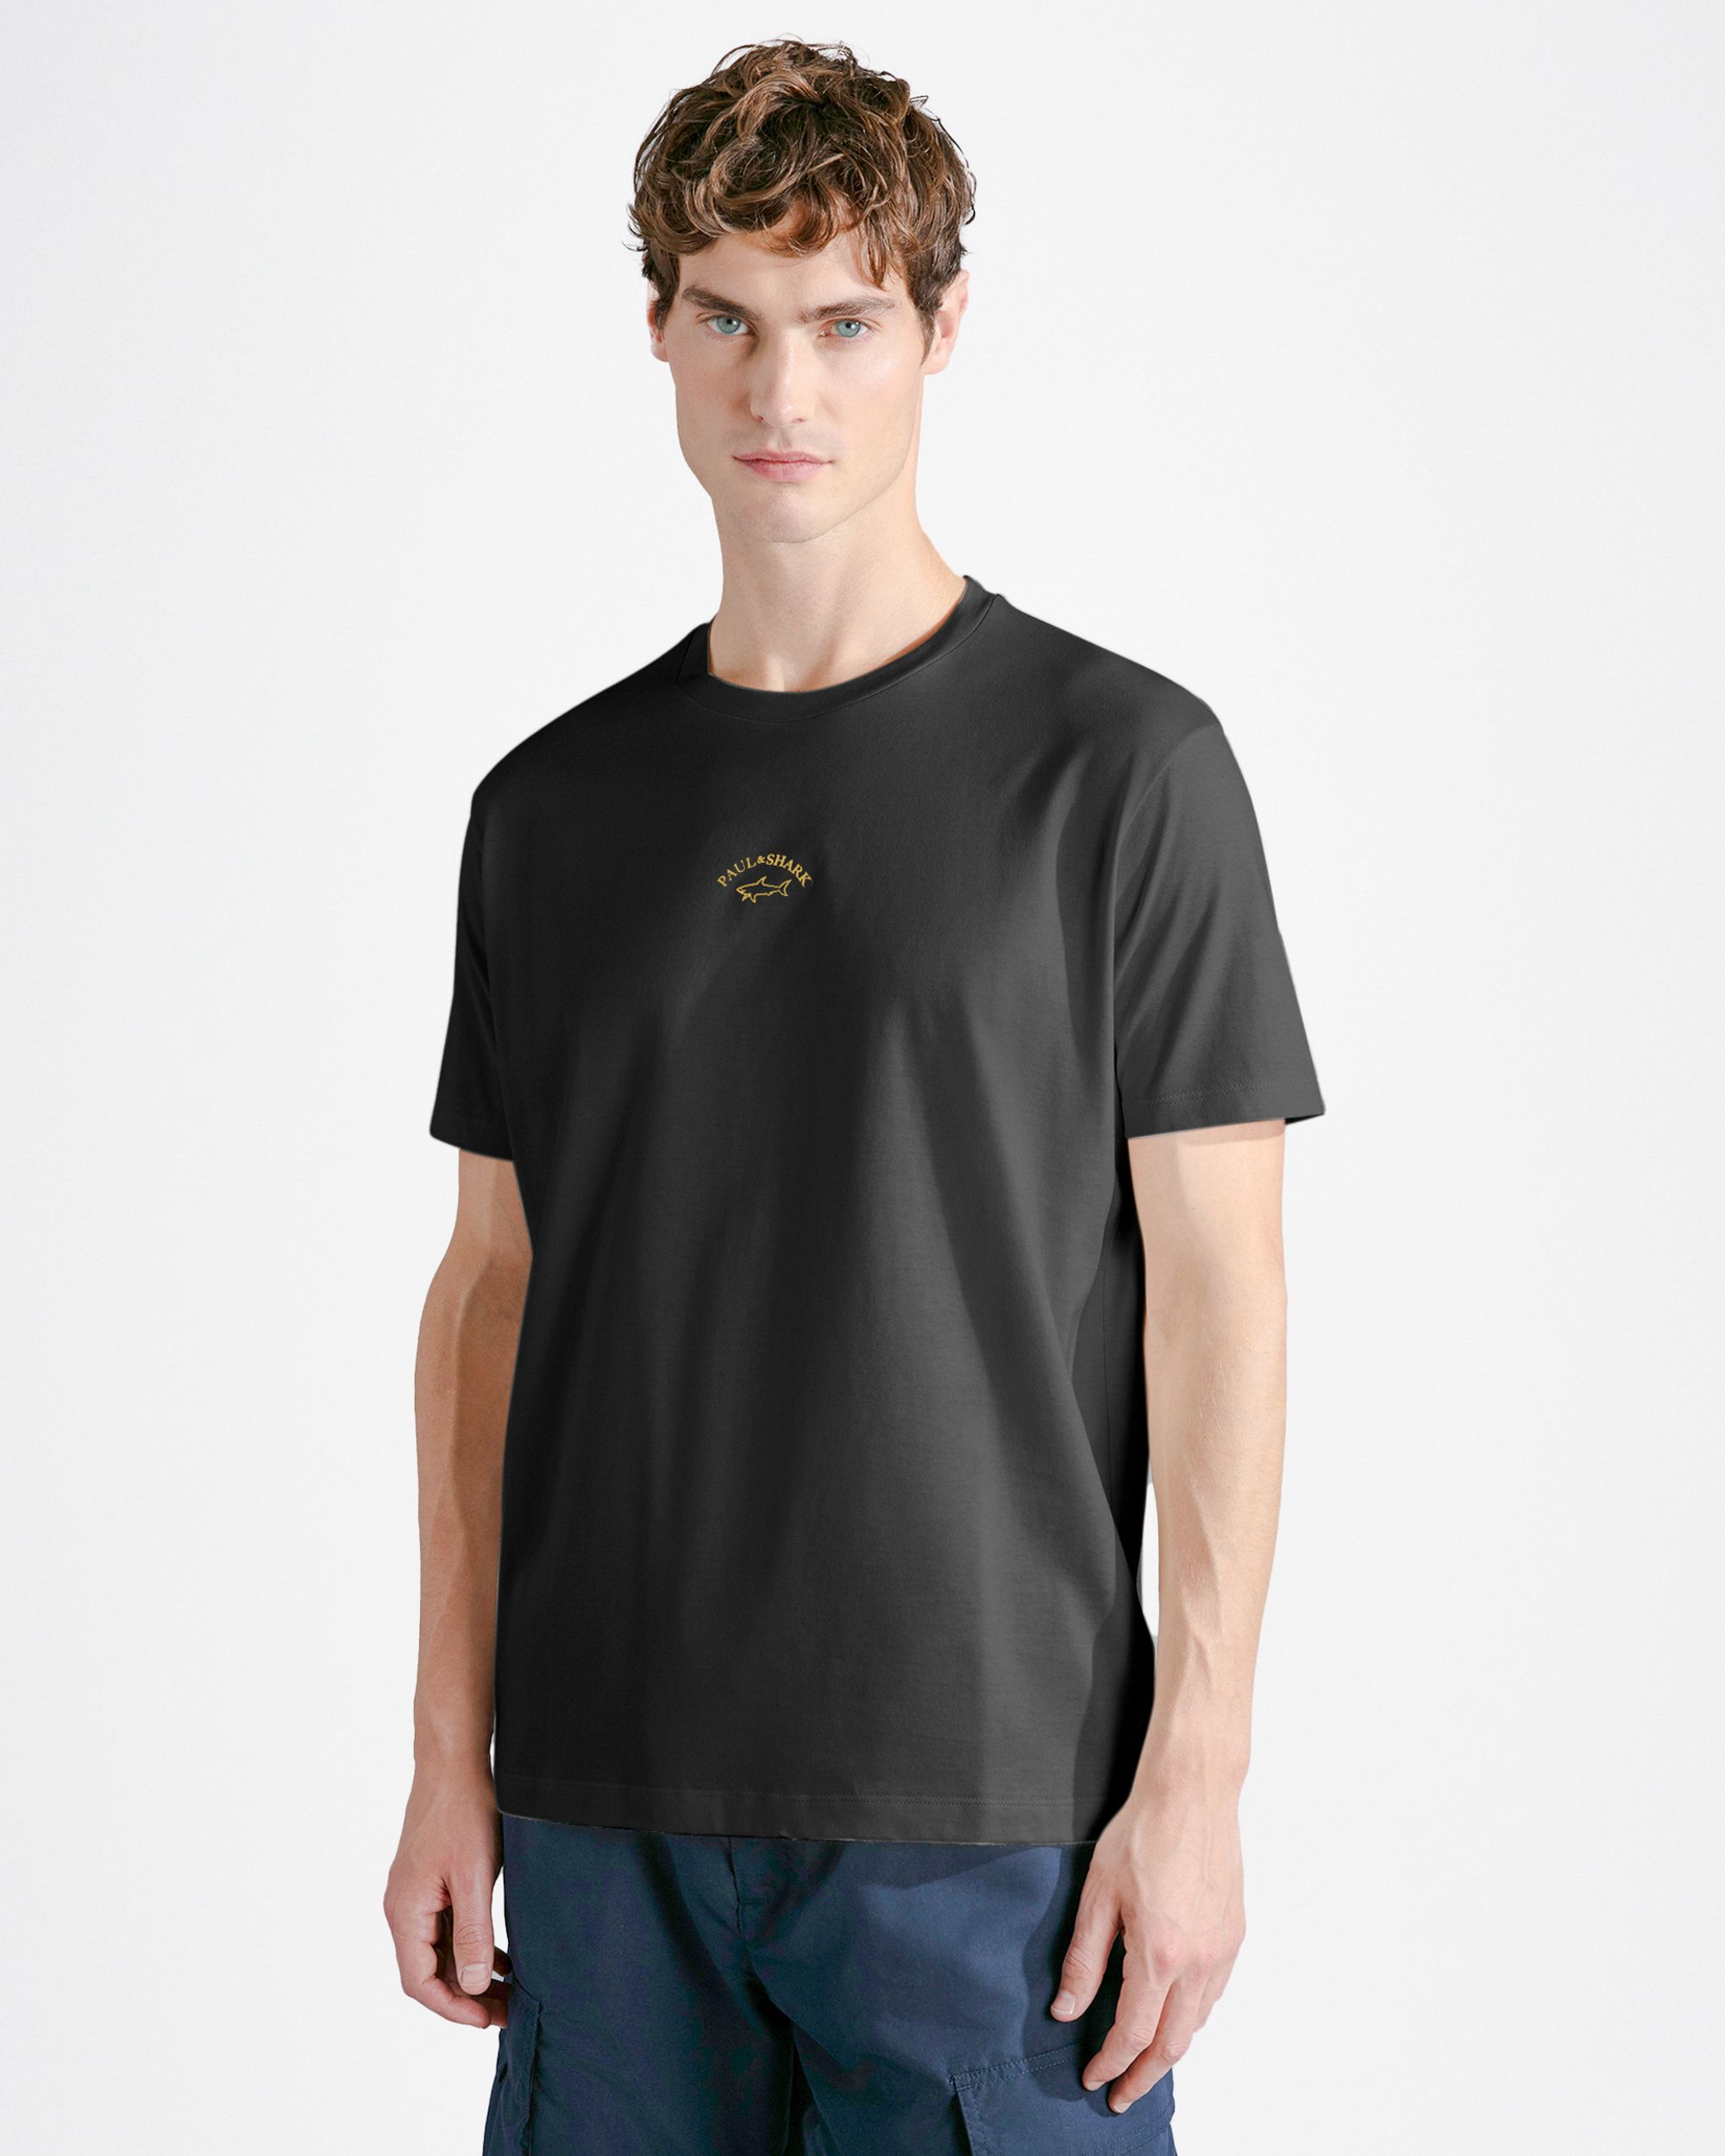 Paul & Shark T-shirt KM Zwart 092030-001-L